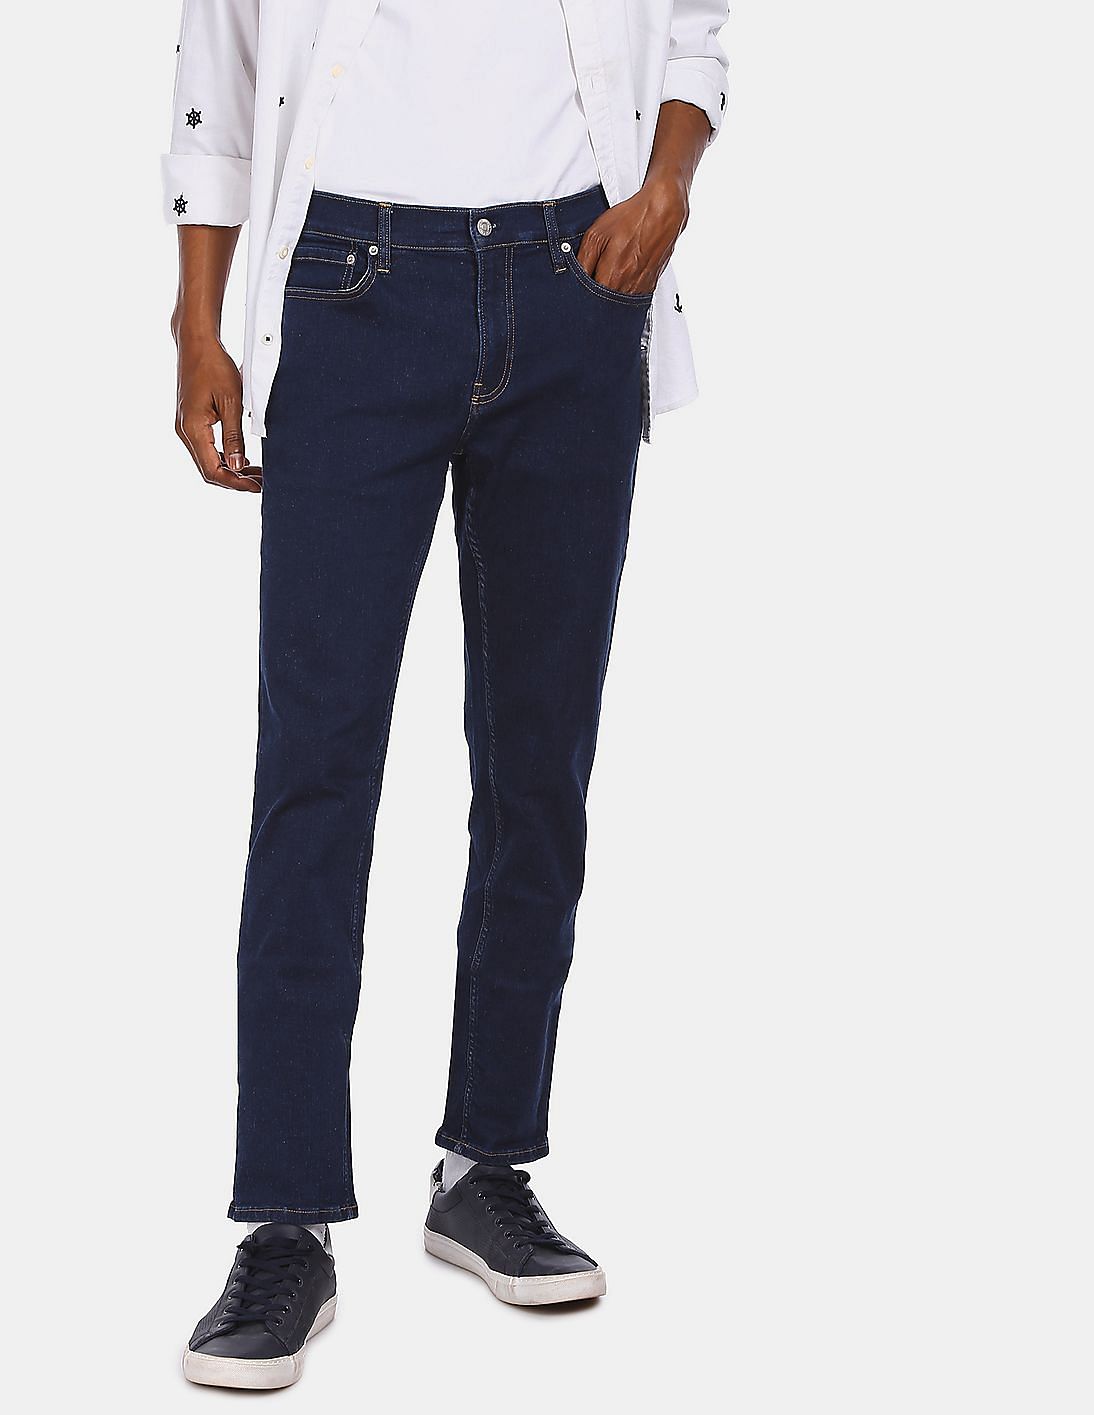 Buy Calvin Klein Men Dark Blue Slim Fit Infinite Flex Clean Look Jeans